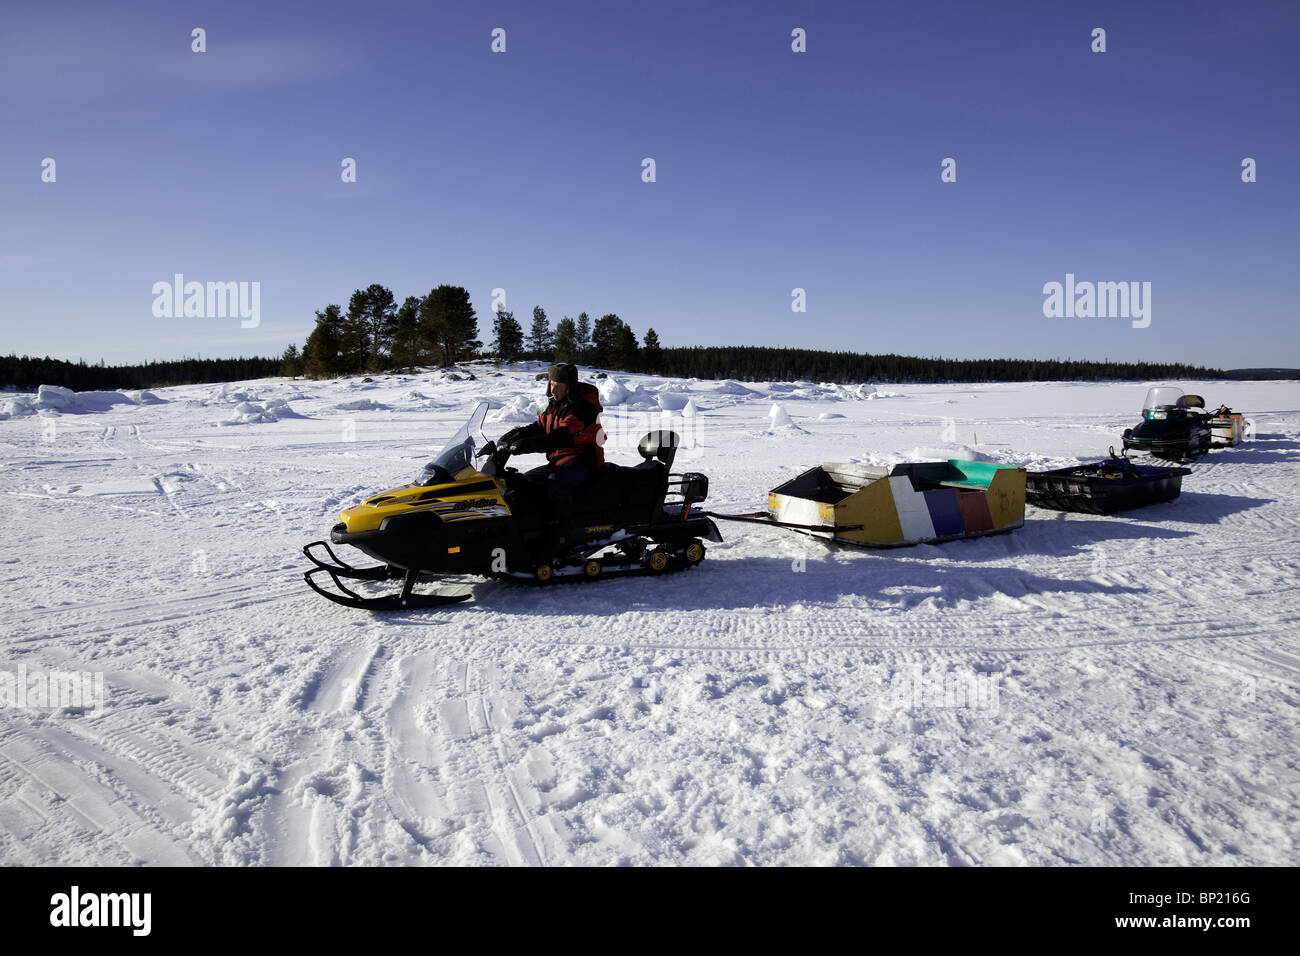 Ski-doo per il trasporto di attrezzature e di subacquei, mare bianco, Carelia, Russia Foto Stock